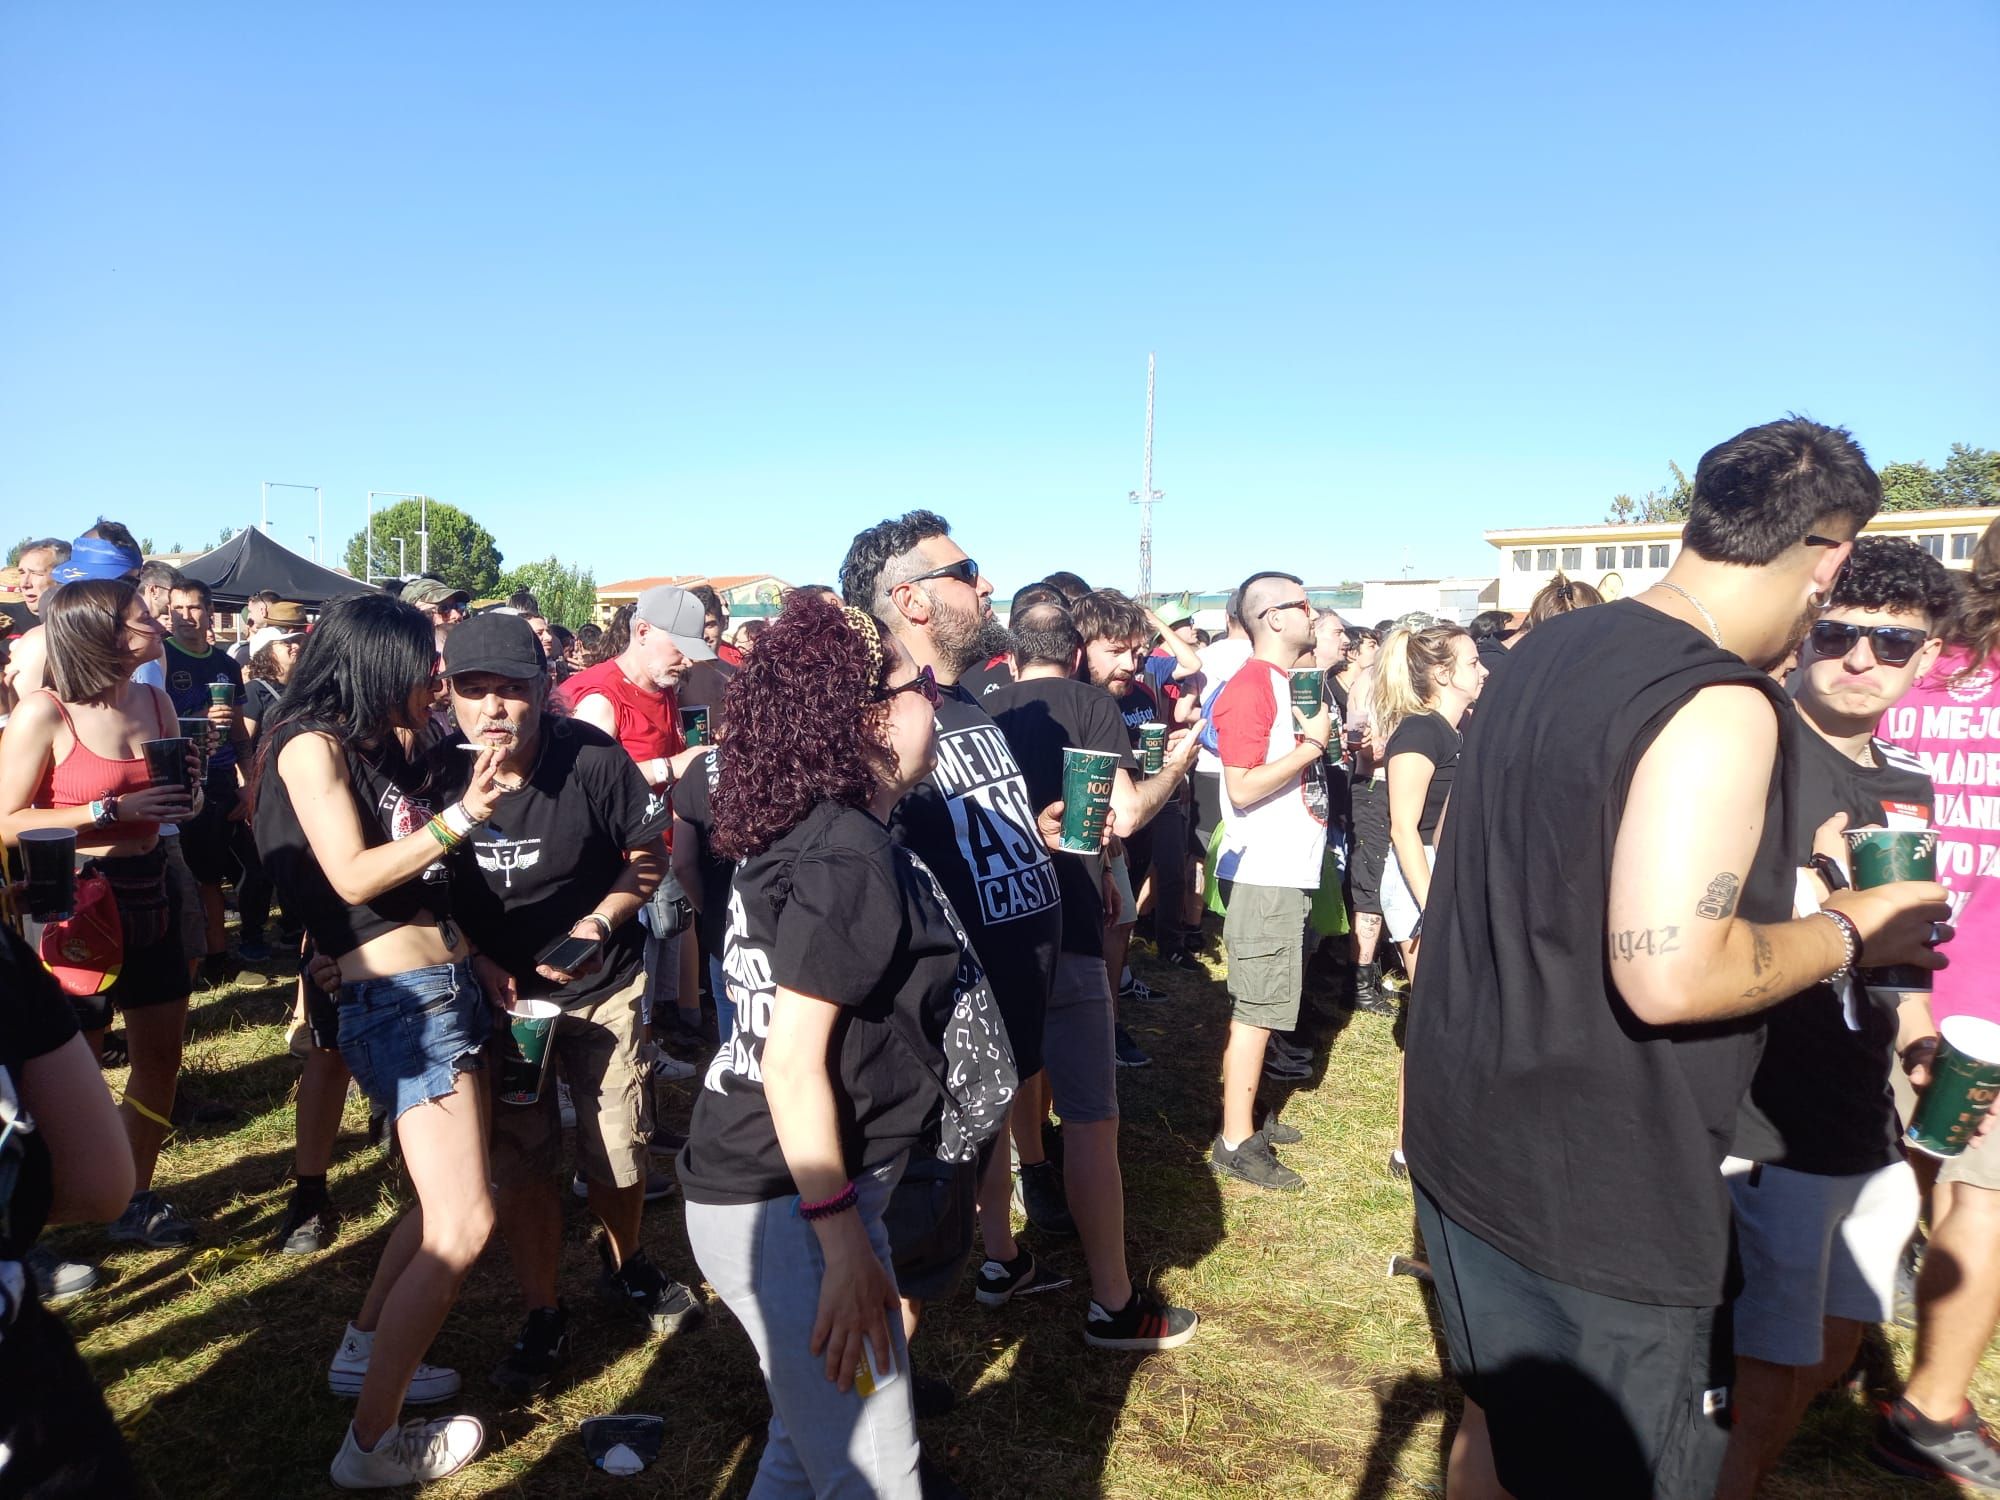 GALERÍA | La primera jornada del Festival "Vintoro" 2024 llena Toro de rock y punk